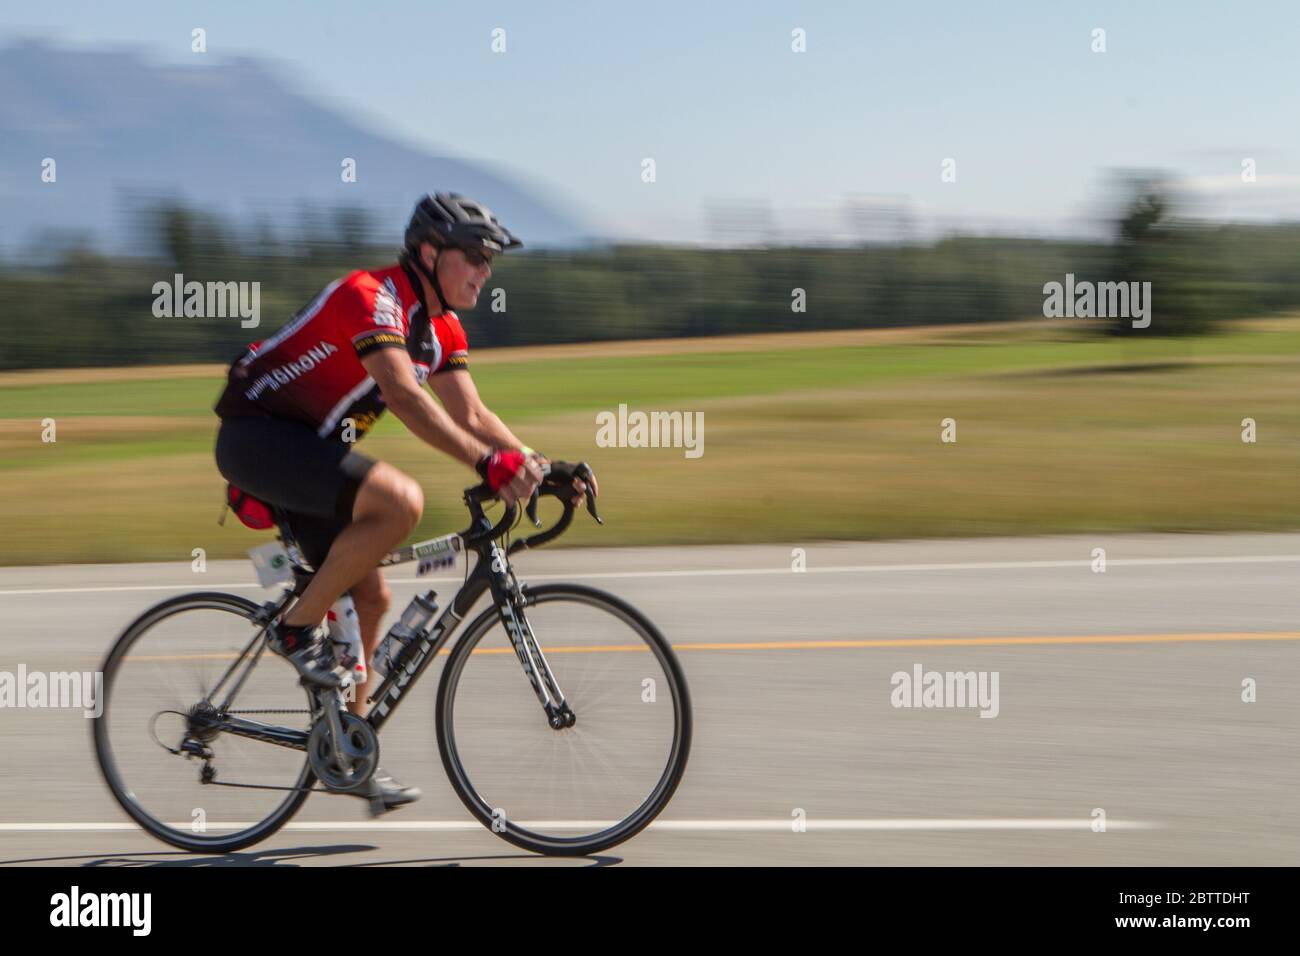 Scenic Bike Race, Einzelfahrer, in voller Rennausrüstung und Uniform. Unscharfer Hintergrund. Stockfoto